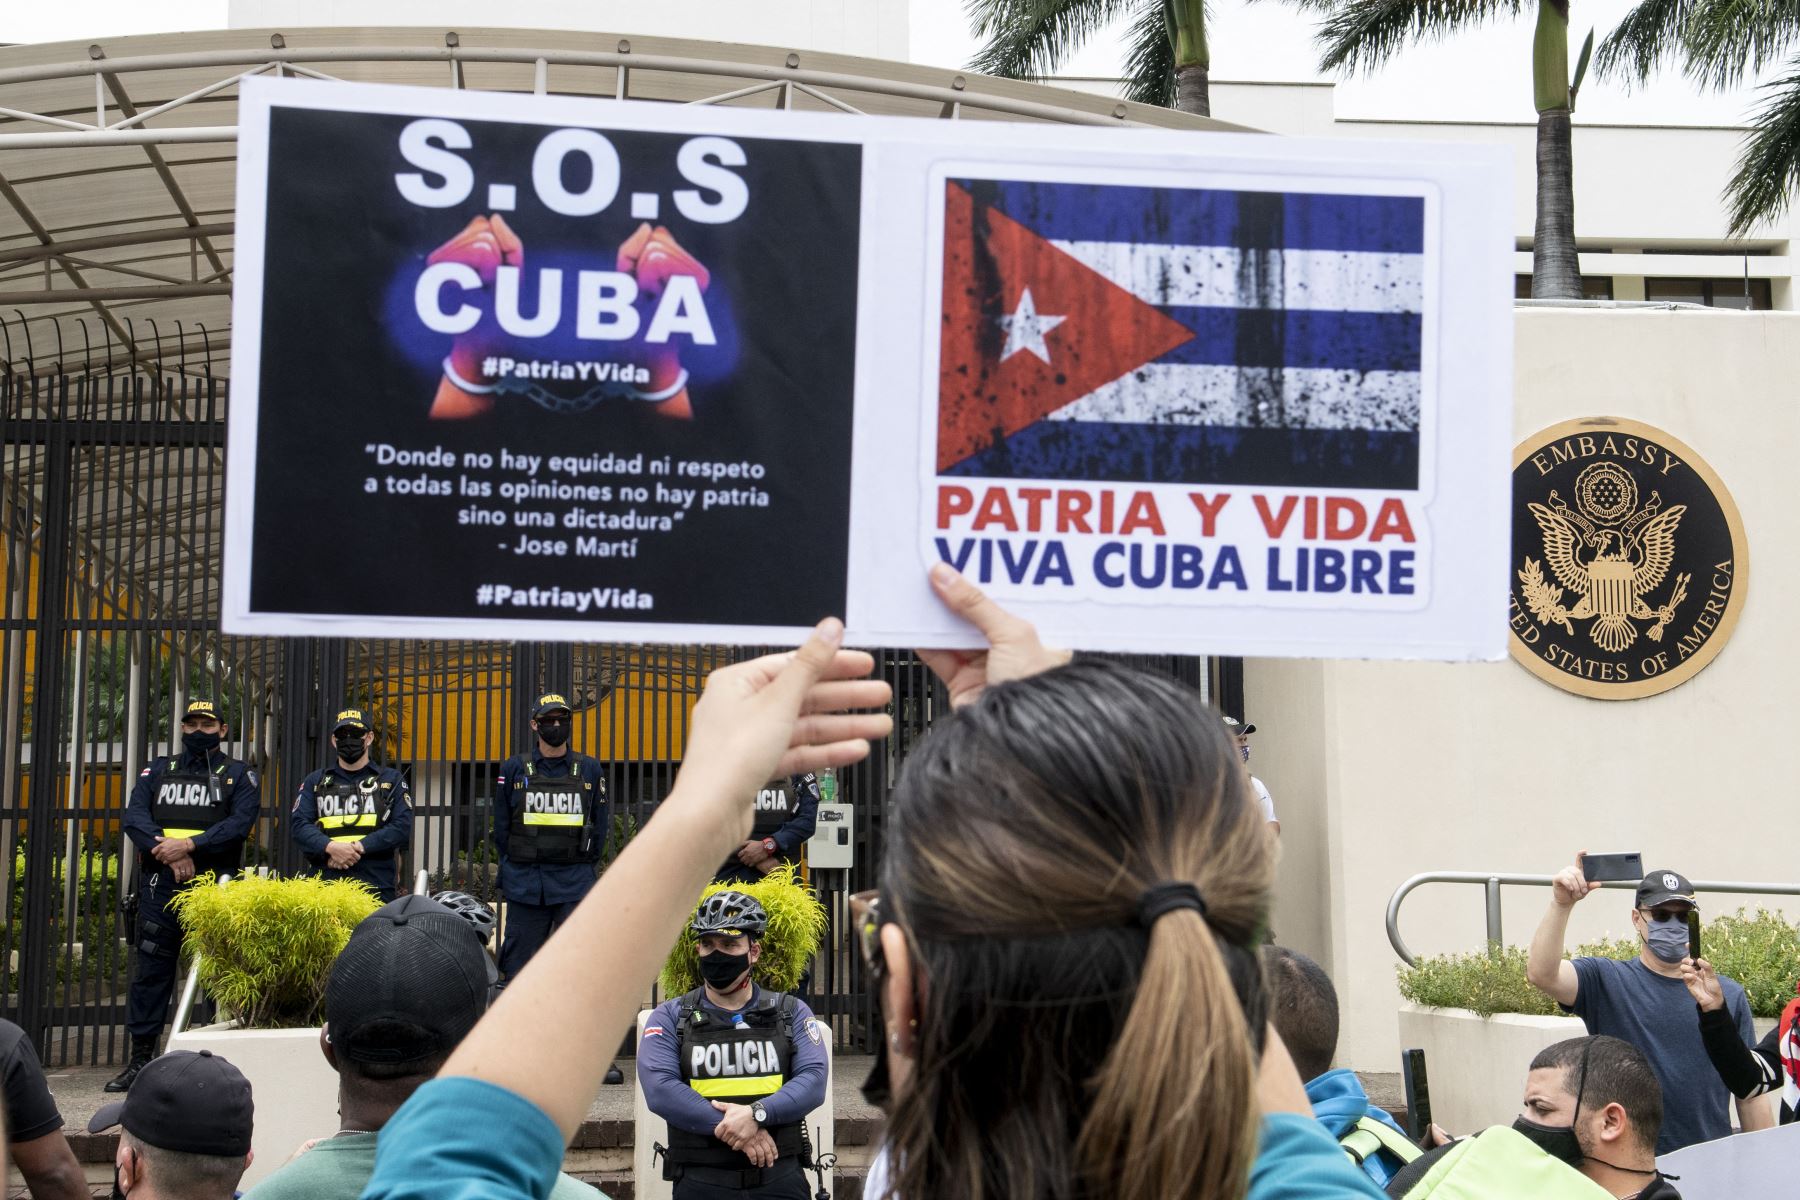 Los cubanos residentes en Costa Rica se manifiestan frente a la embajada de Estados Unidos en San José pidiendo una intervención militar y humanitaria en Cuba.
Foto: AFP